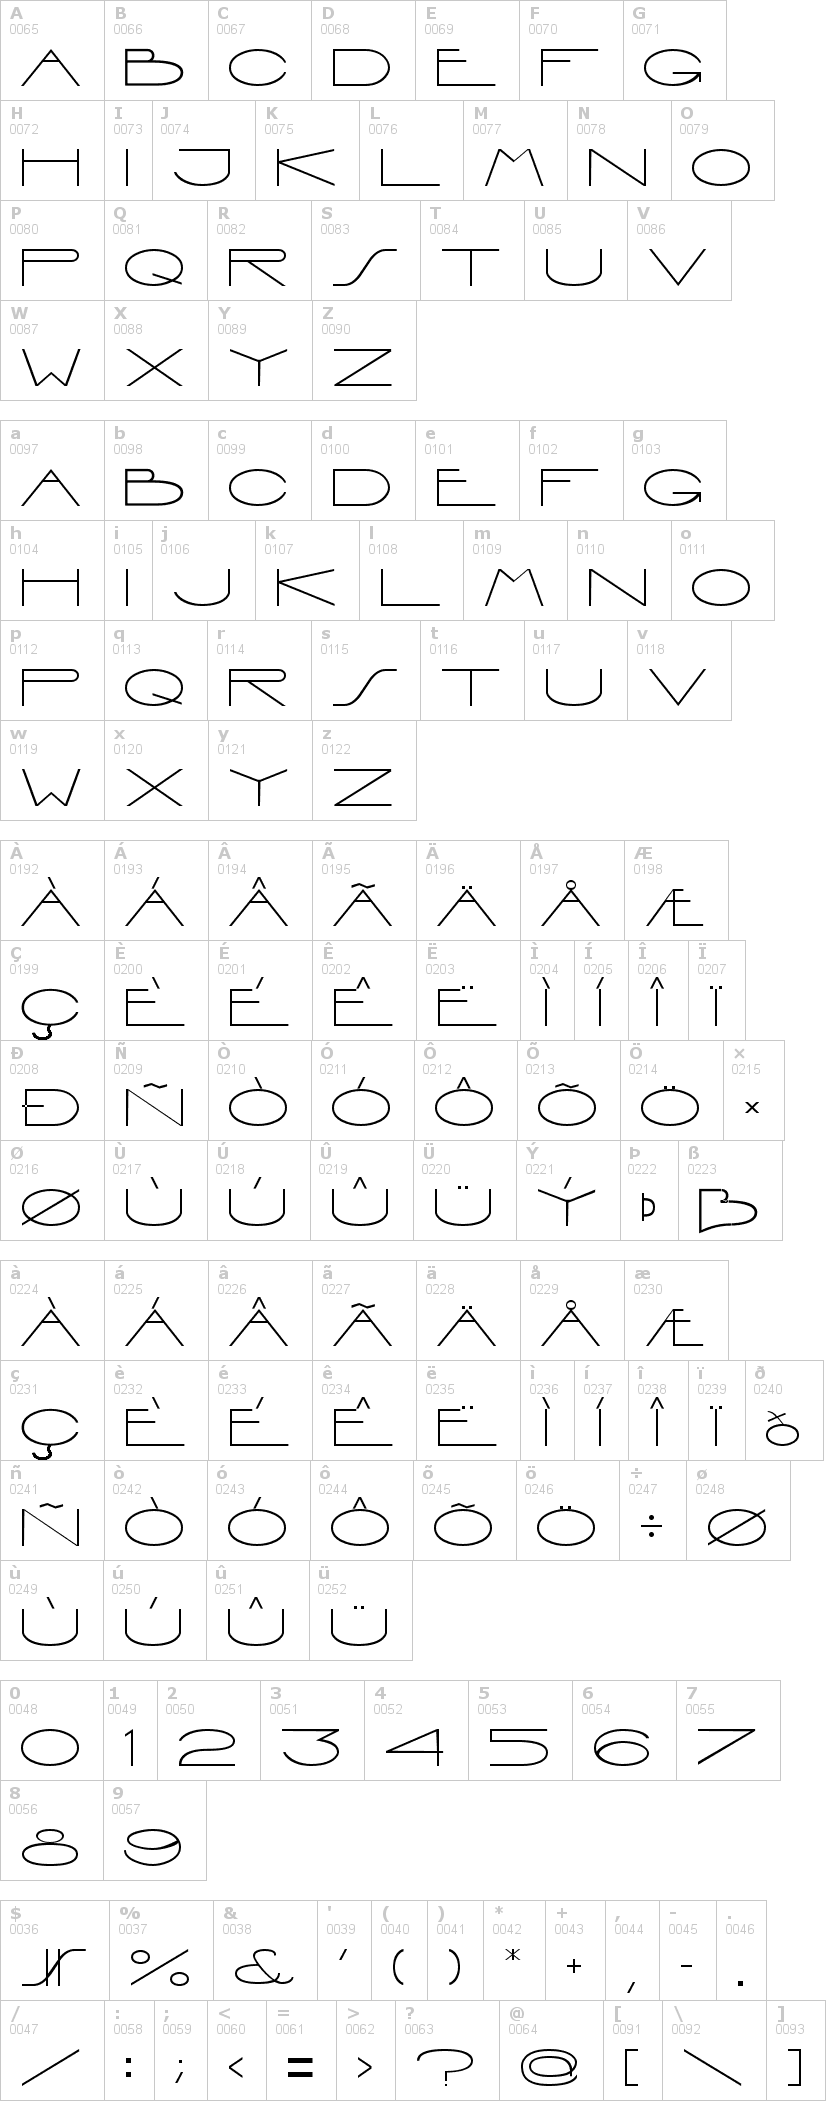 Lettere dell'alfabeto del font interdimentional con le quali è possibile realizzare adesivi prespaziati